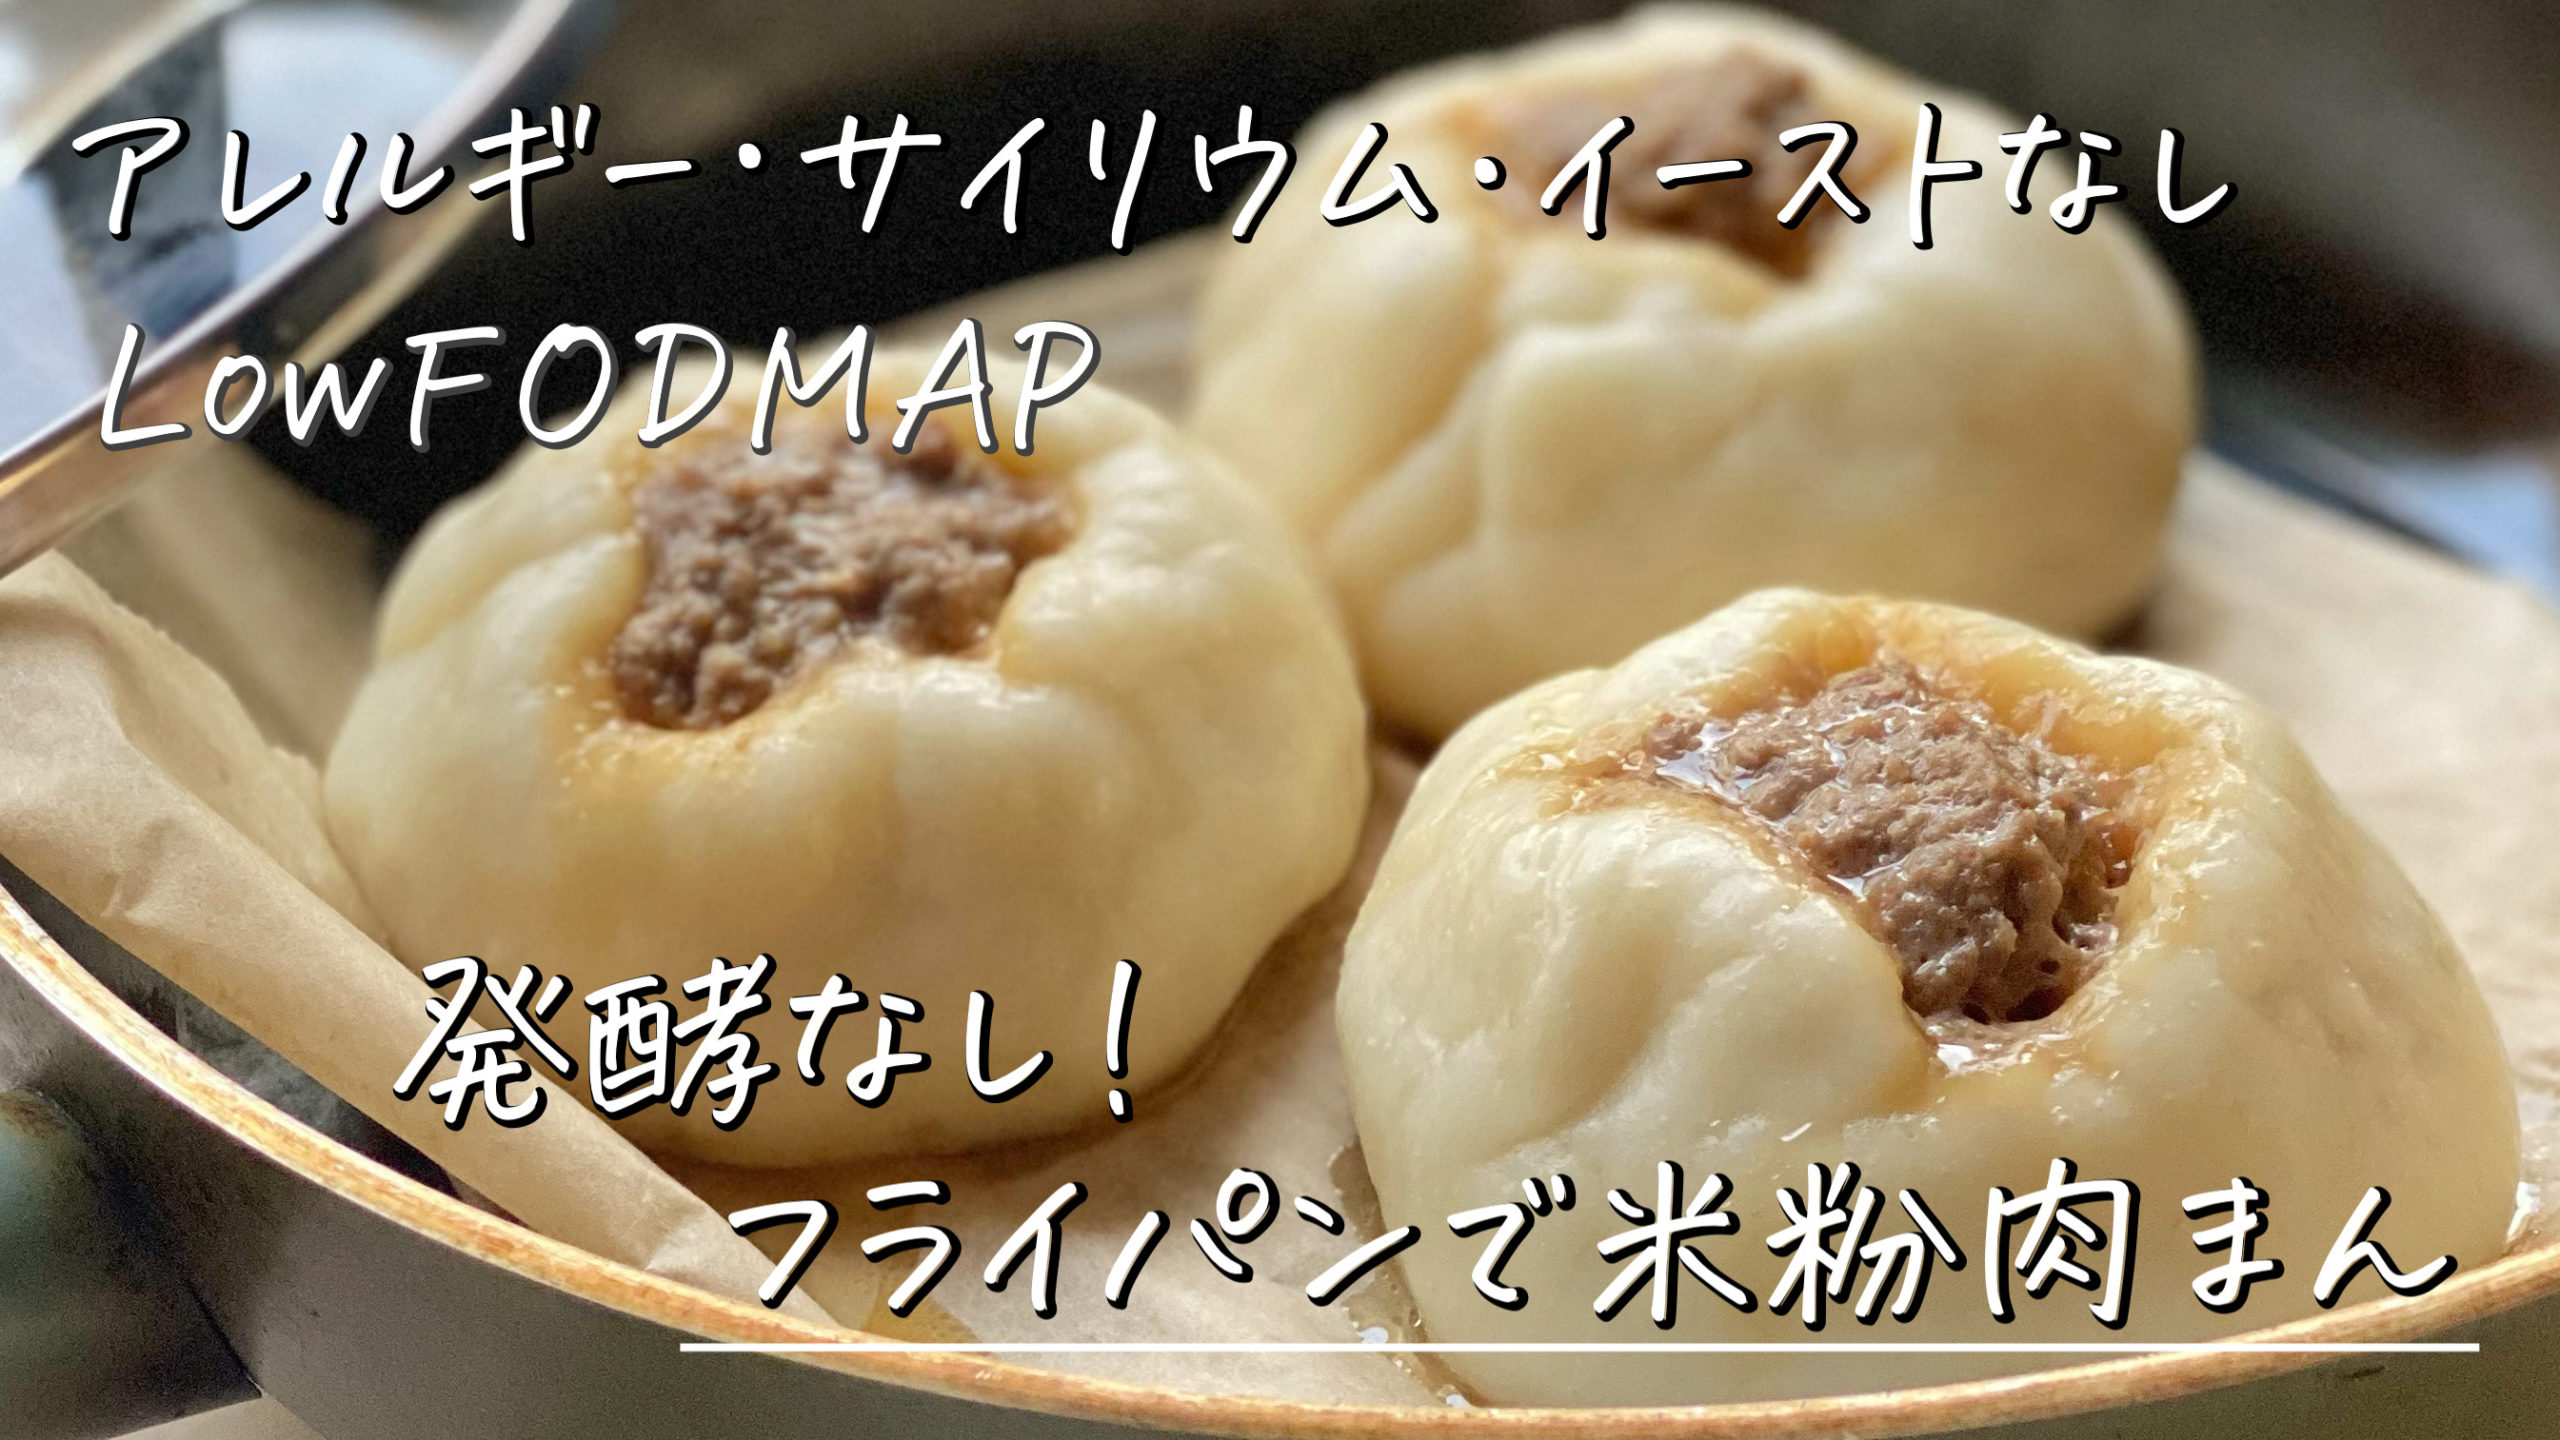 low-fodmap-recipe-of-rice-flower-steamed-bun-in-fry-pan